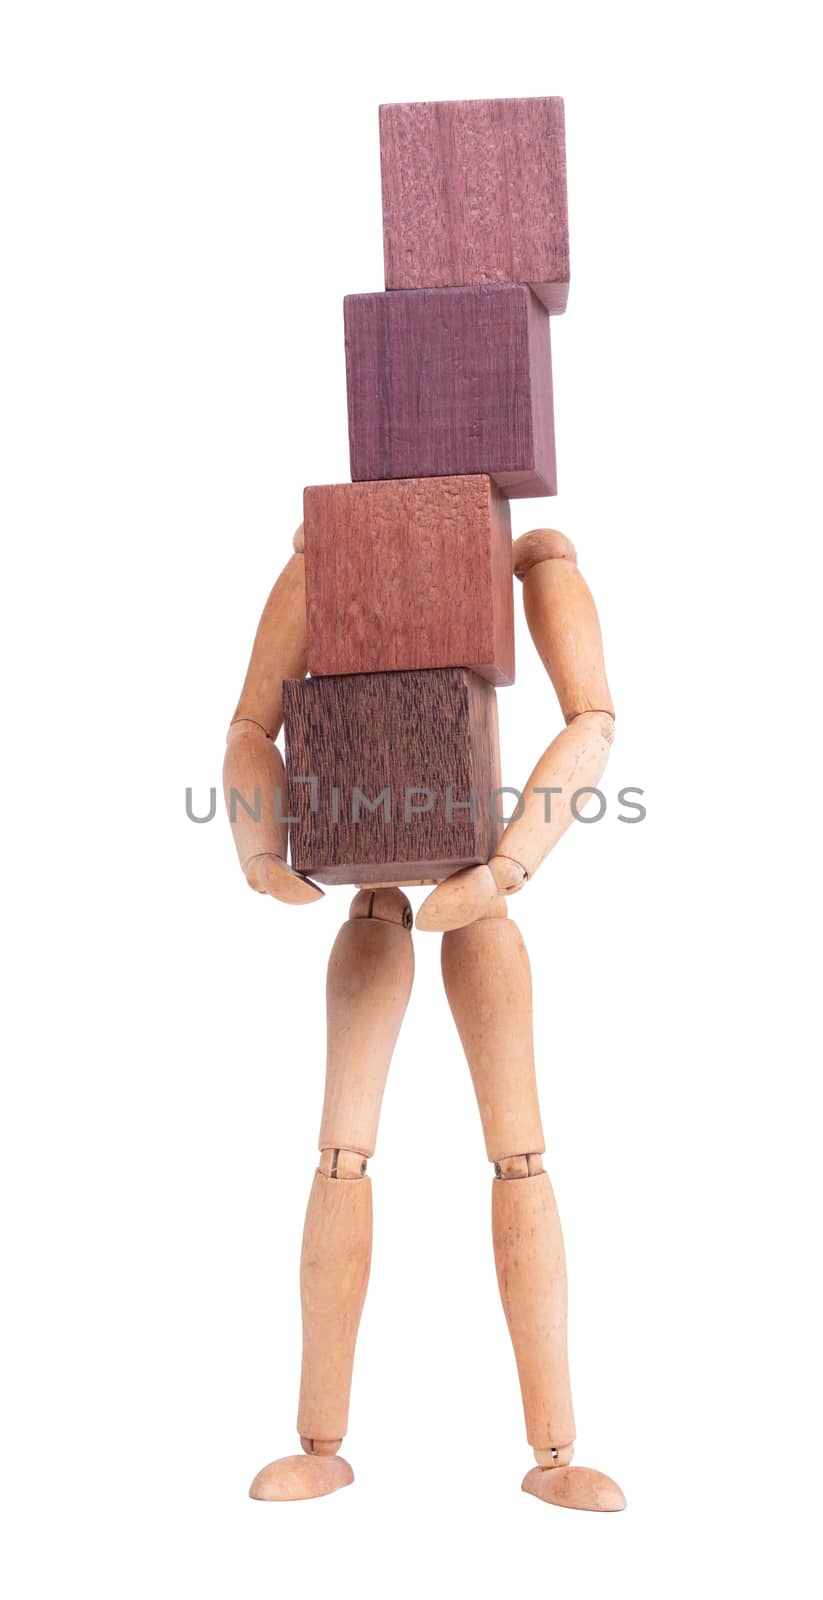 Wooden mannequin carrying wooden hardwood blocks by michaklootwijk